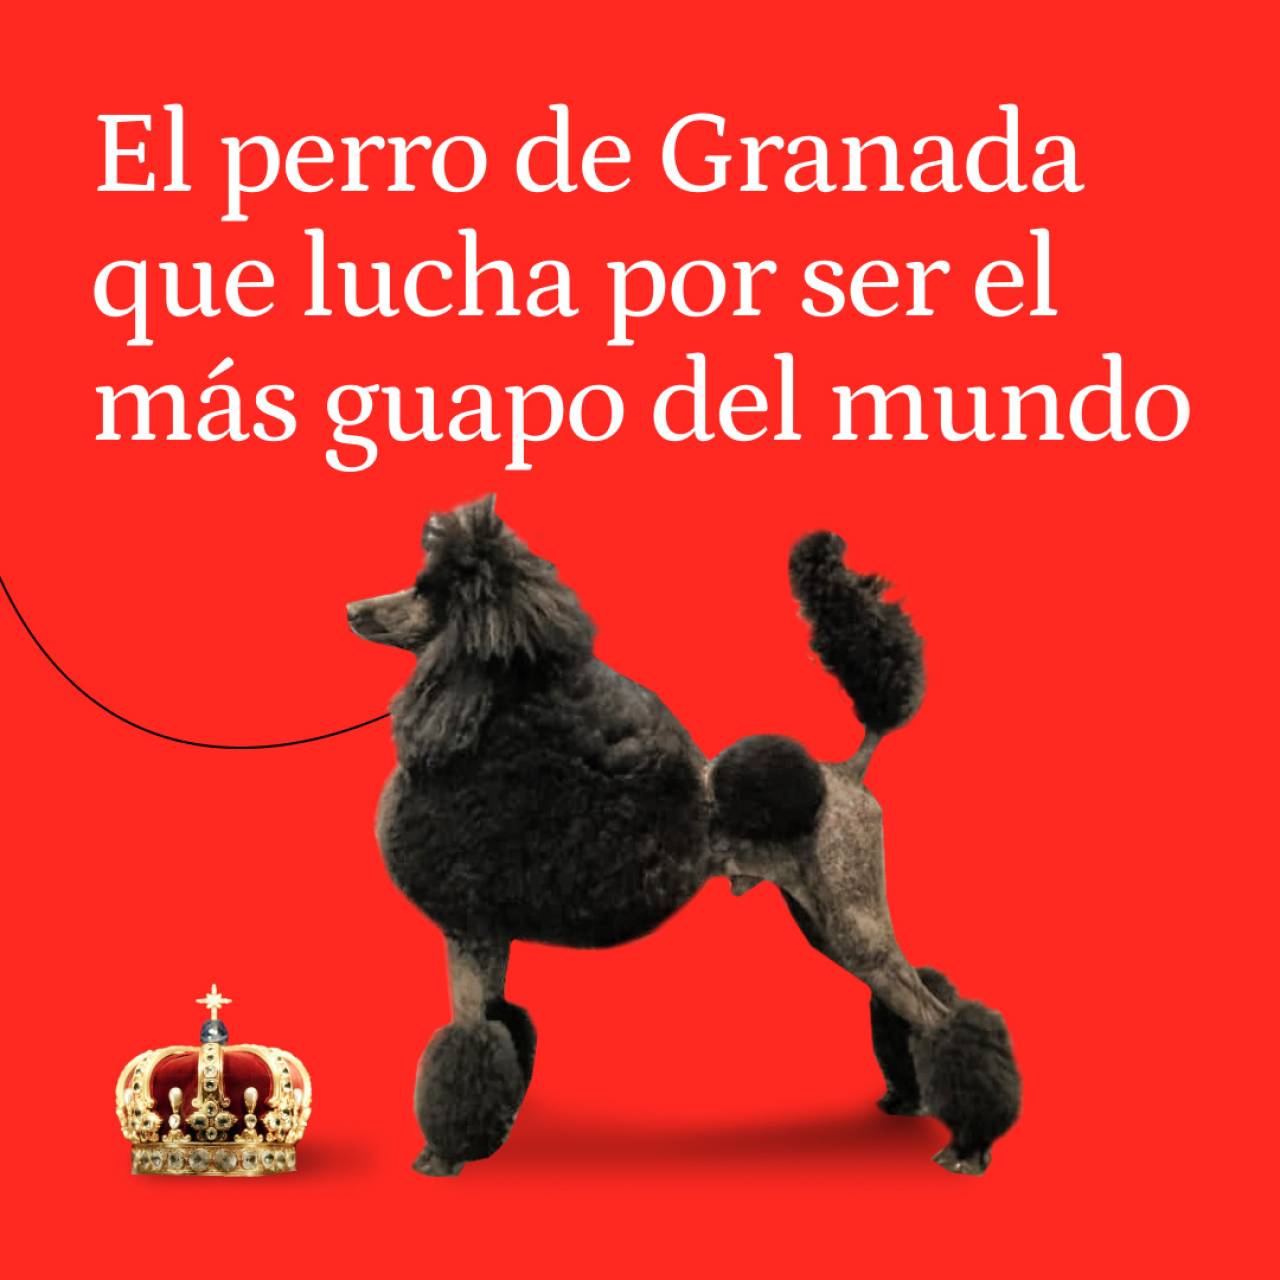 Helmes tiene 2 años, es de Granada y tardan 6 horas en peinarlo: ¿será el perro más guapo del mundo?